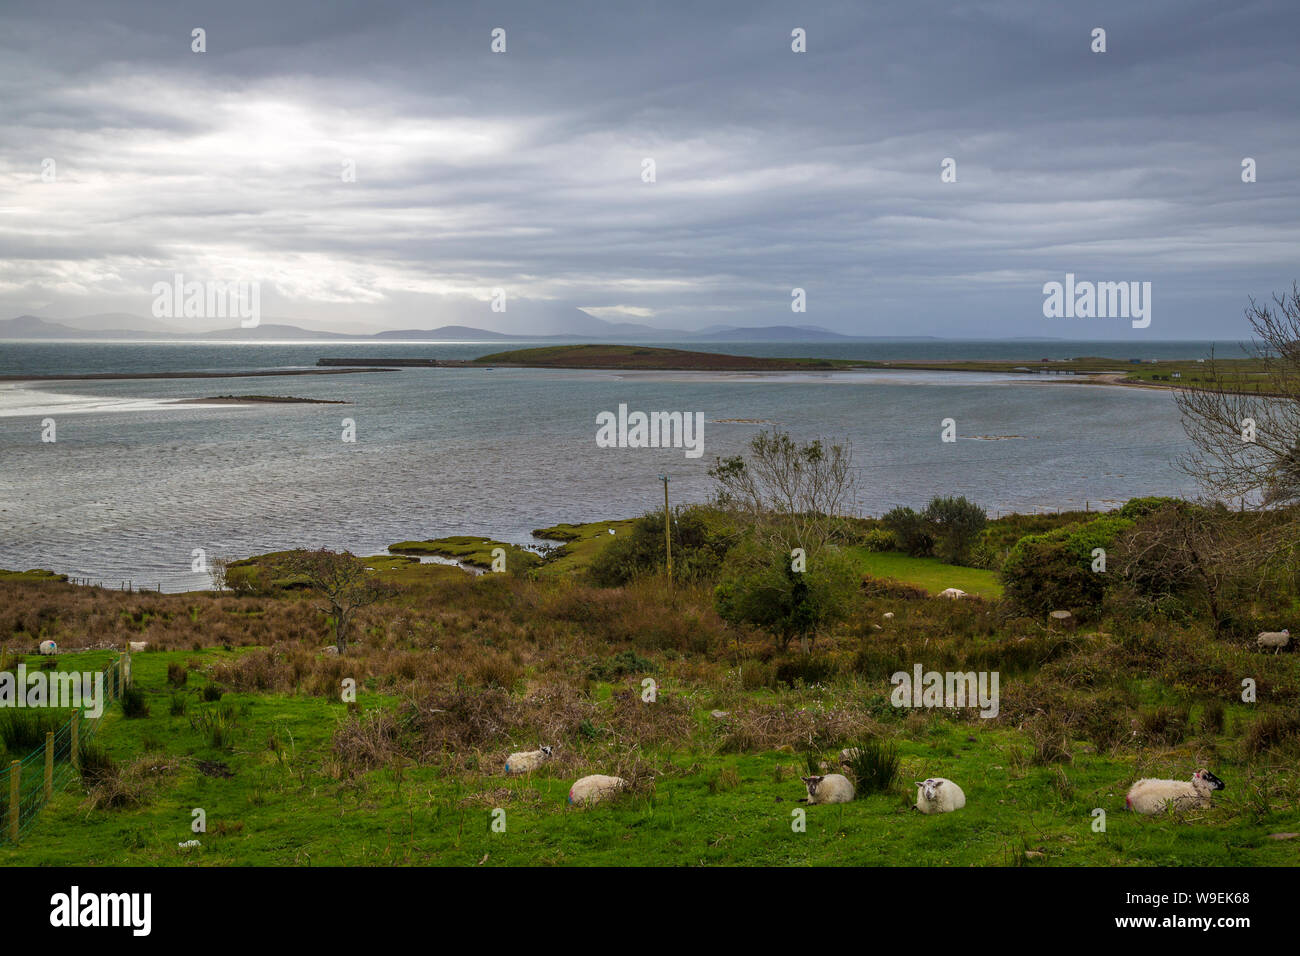 Coastline near Mulranny, Co Mayo, Ireland Stock Photo